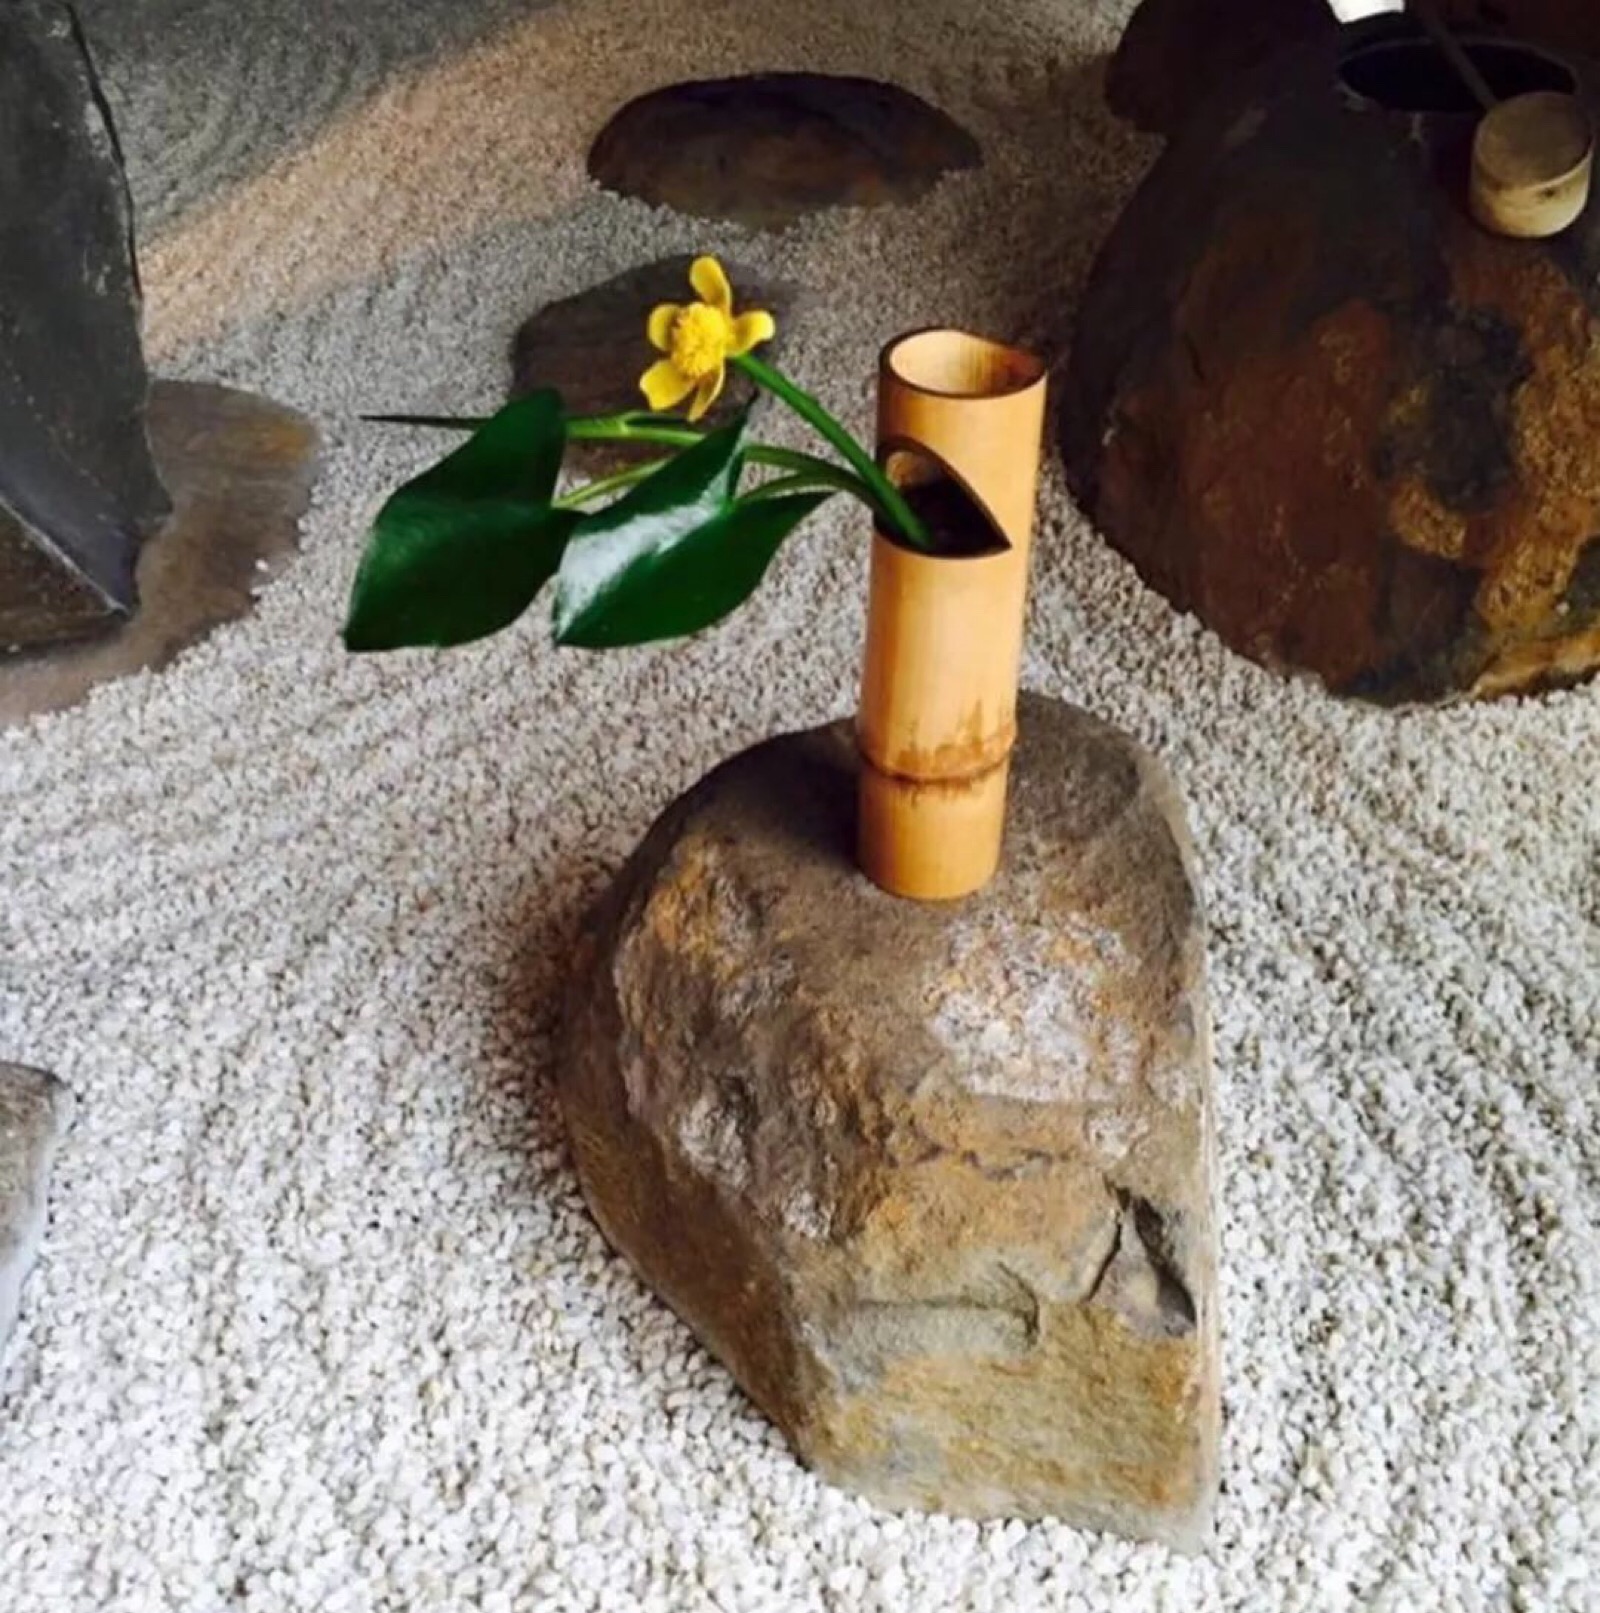 竹花筒是日本传统花道的器物,最早是从日本茶室发展起来的,中国淘宝上